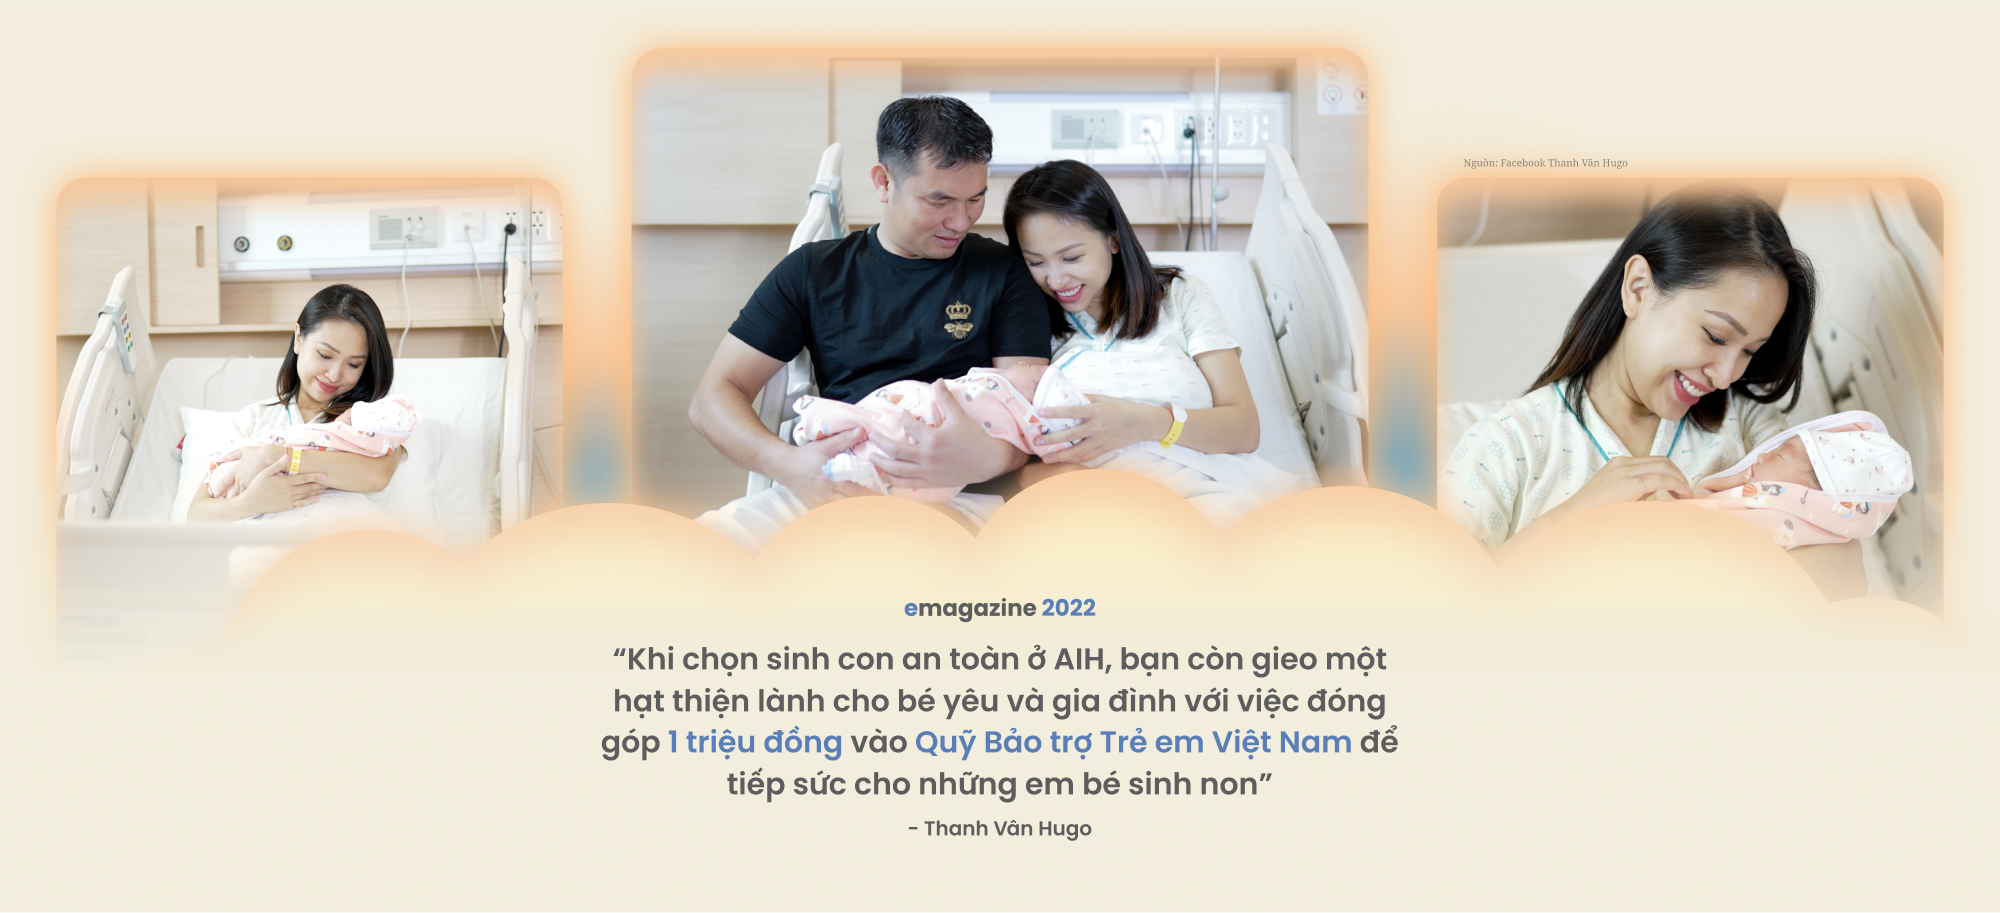 Nghệ sĩ Việt chung tay cùng hành trình nâng niu sự sống của những em bé sinh non - Ảnh 20.